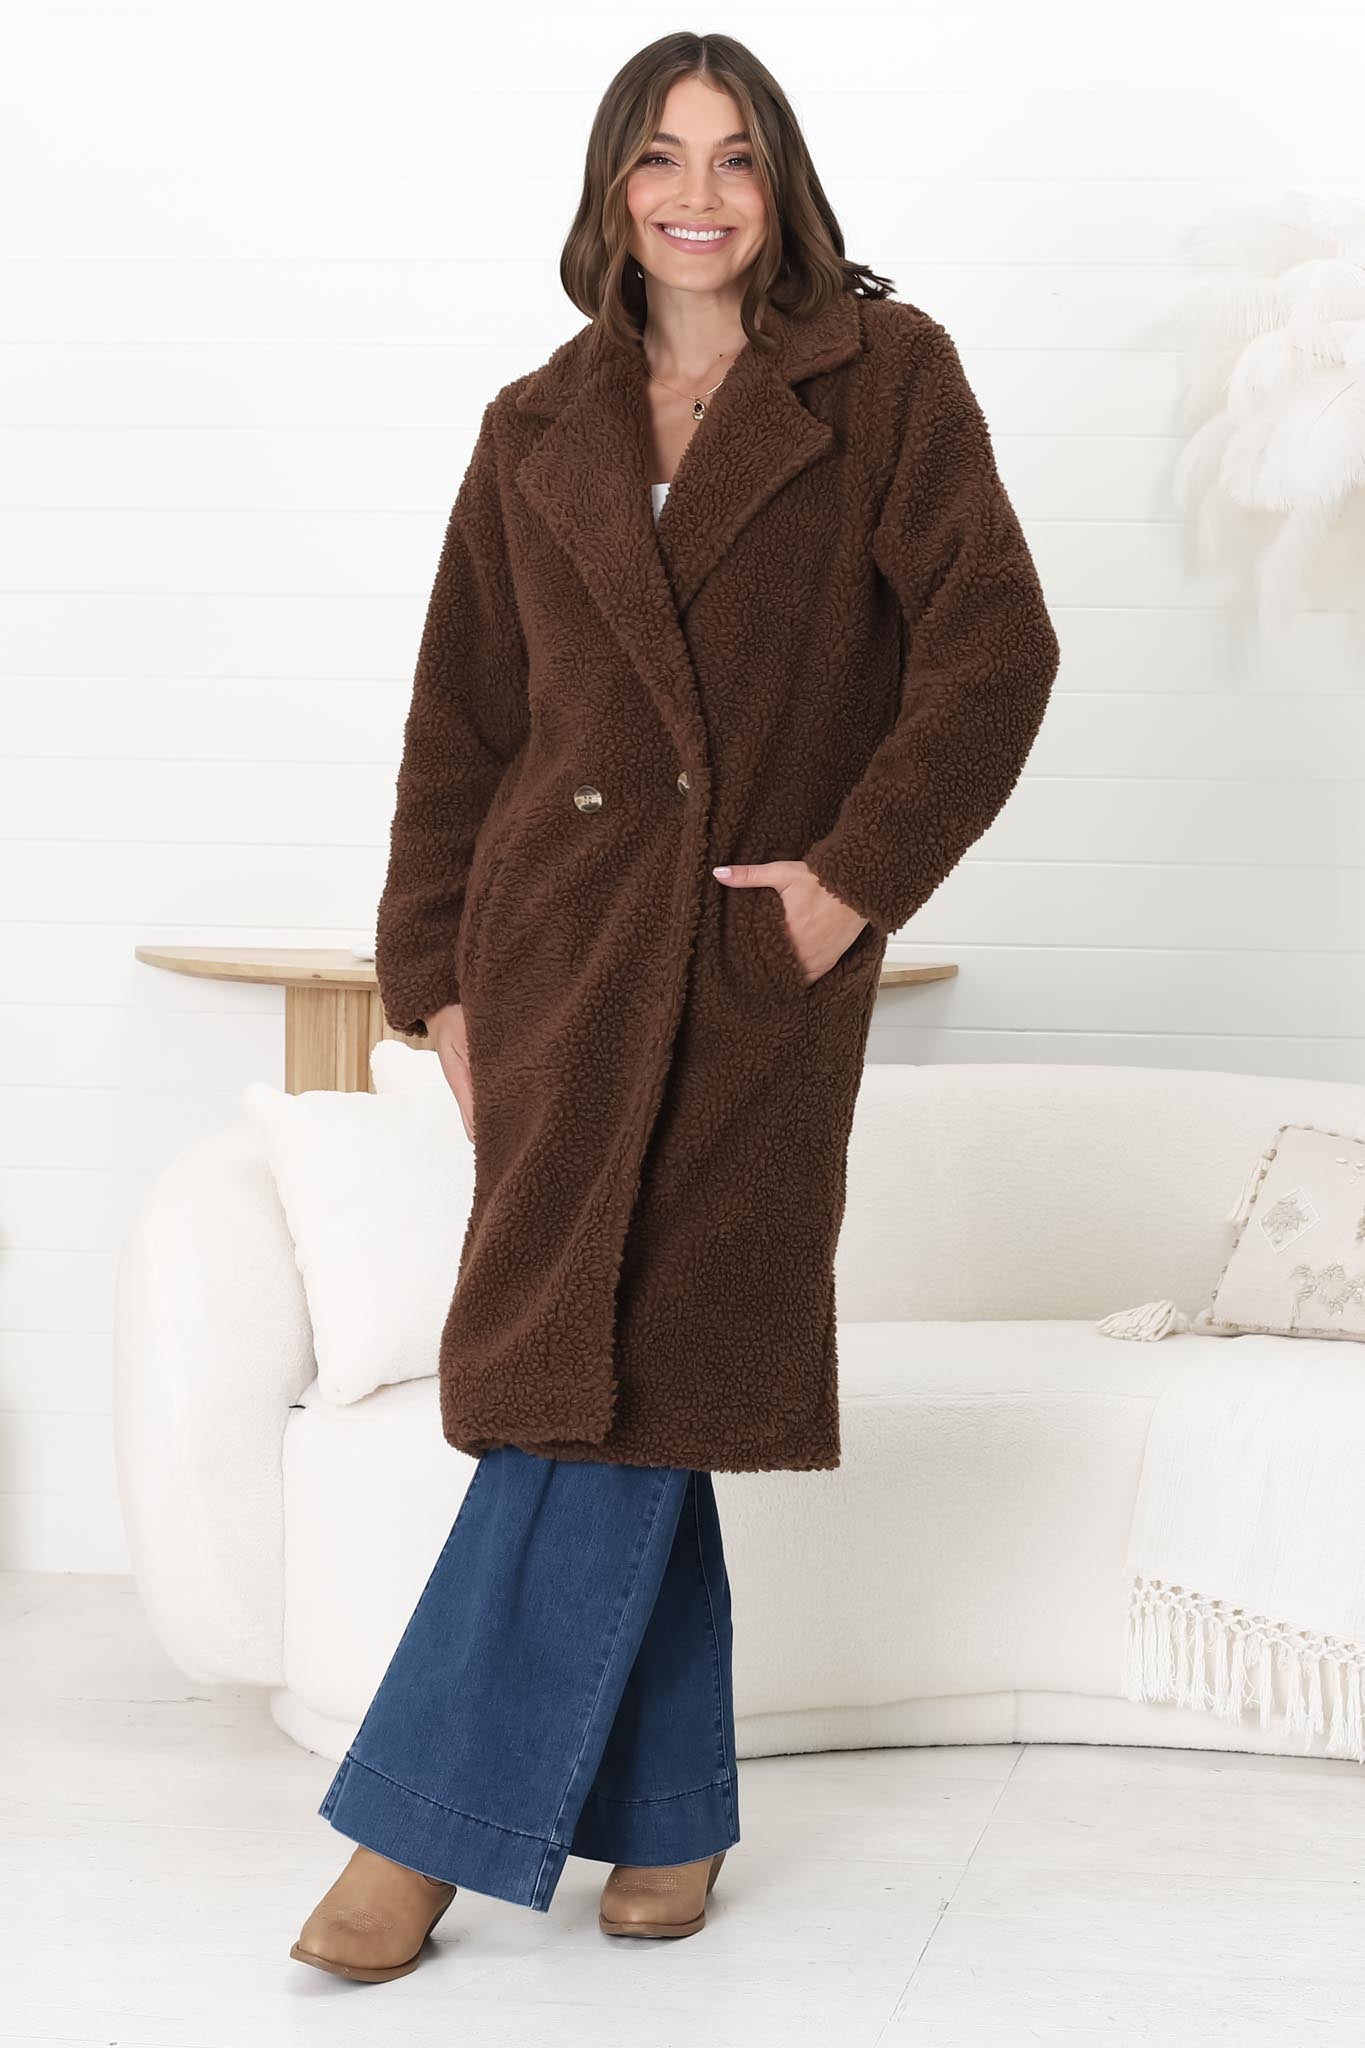 Rooney Coat - Lapel Collared Long Teddy Coat in Brown